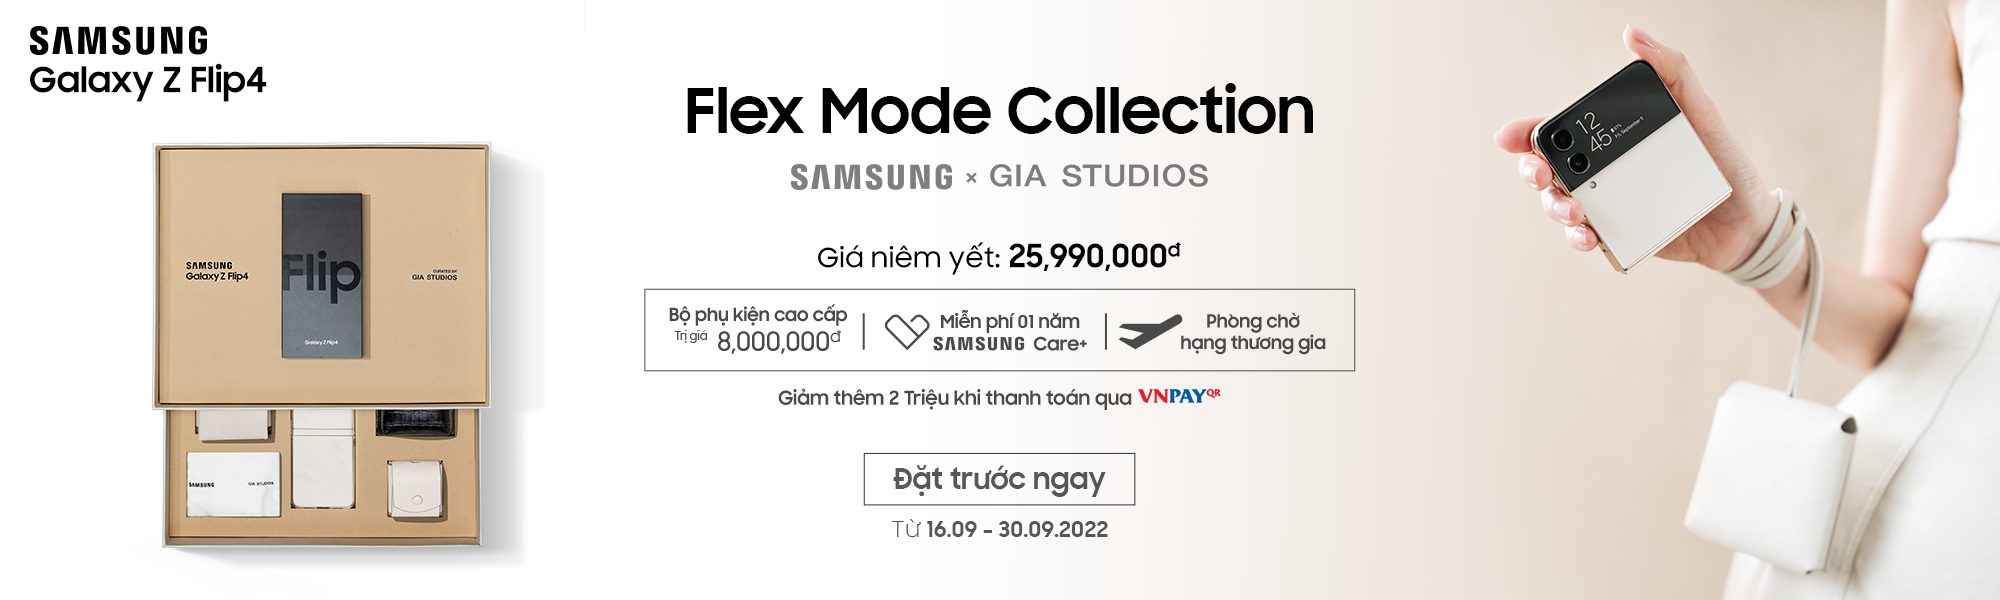 Samsung giới thiệu bộ sưu tập giới hạn Galaxy Z Flip4 Flex Mode Collection